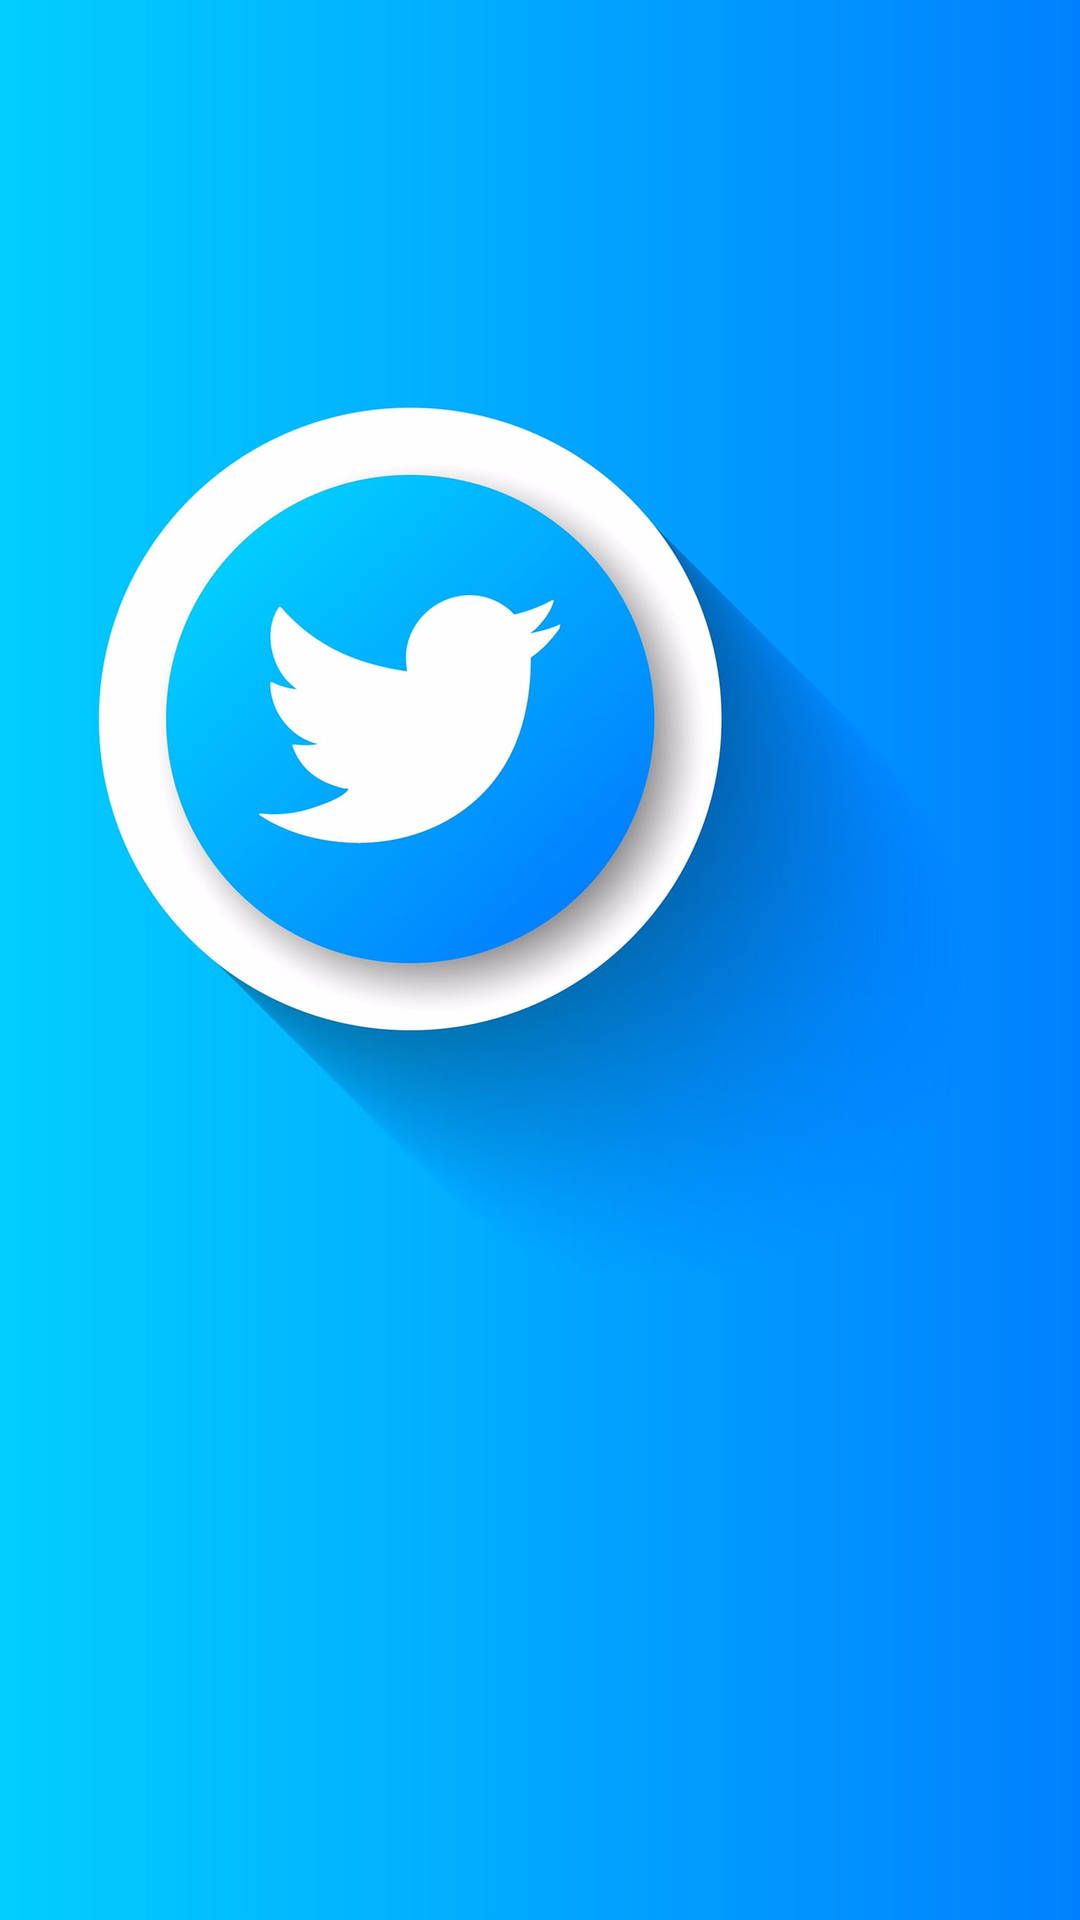 Twitter Bird Emblem Wallpaper